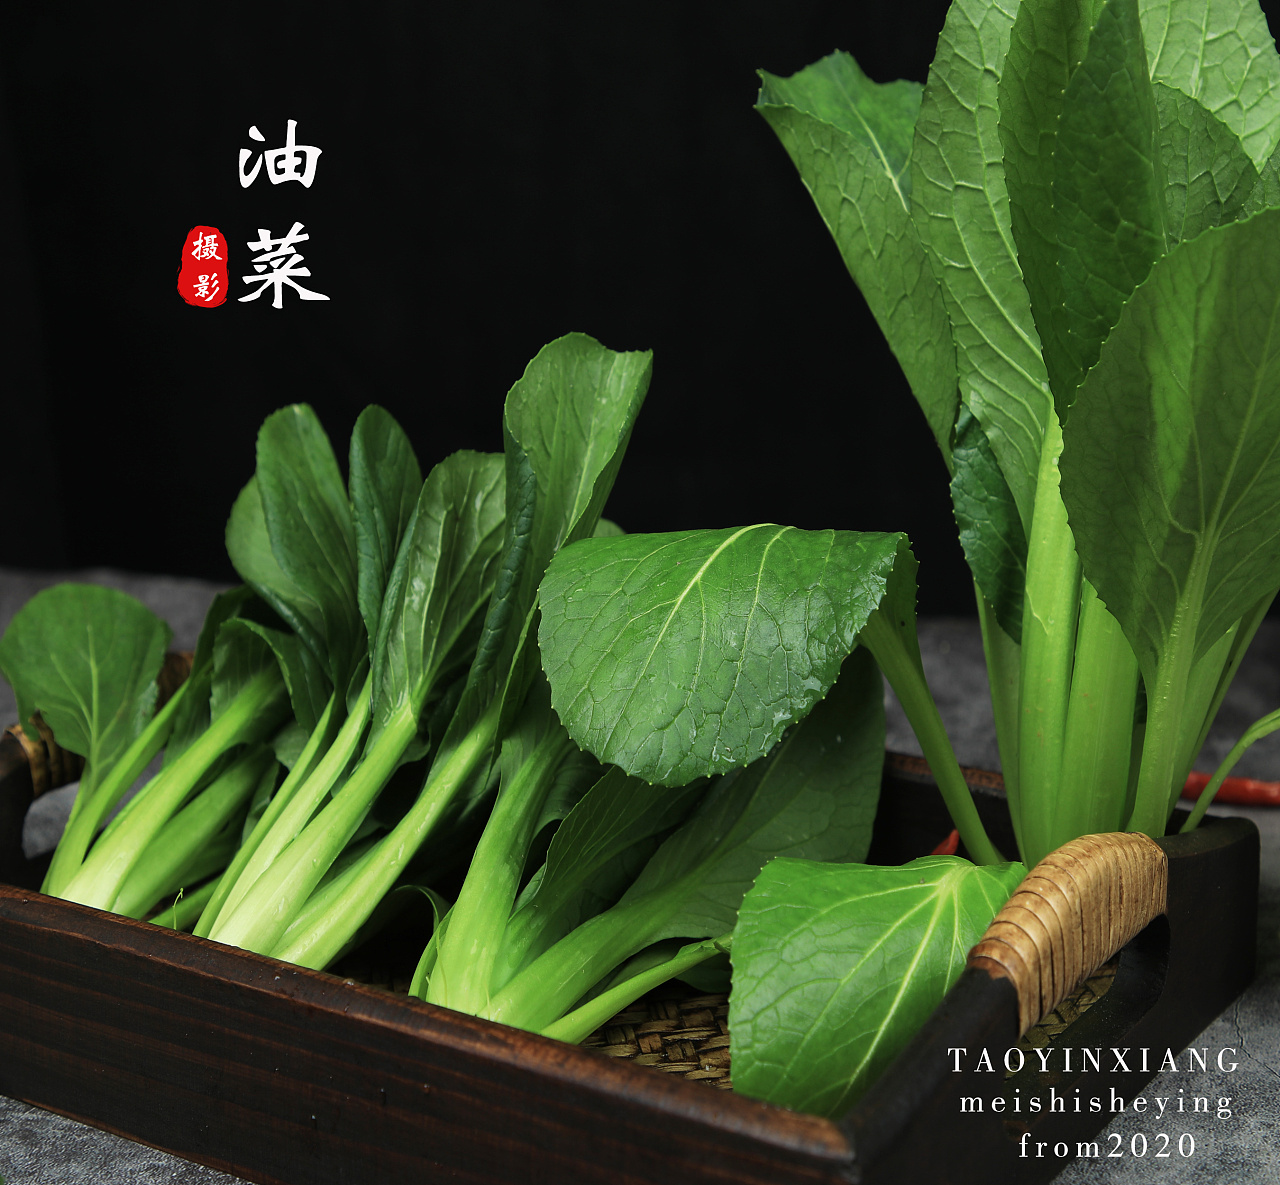 上海青-挑选-价格-菜谱--广州天天生鲜蔬菜配送公司